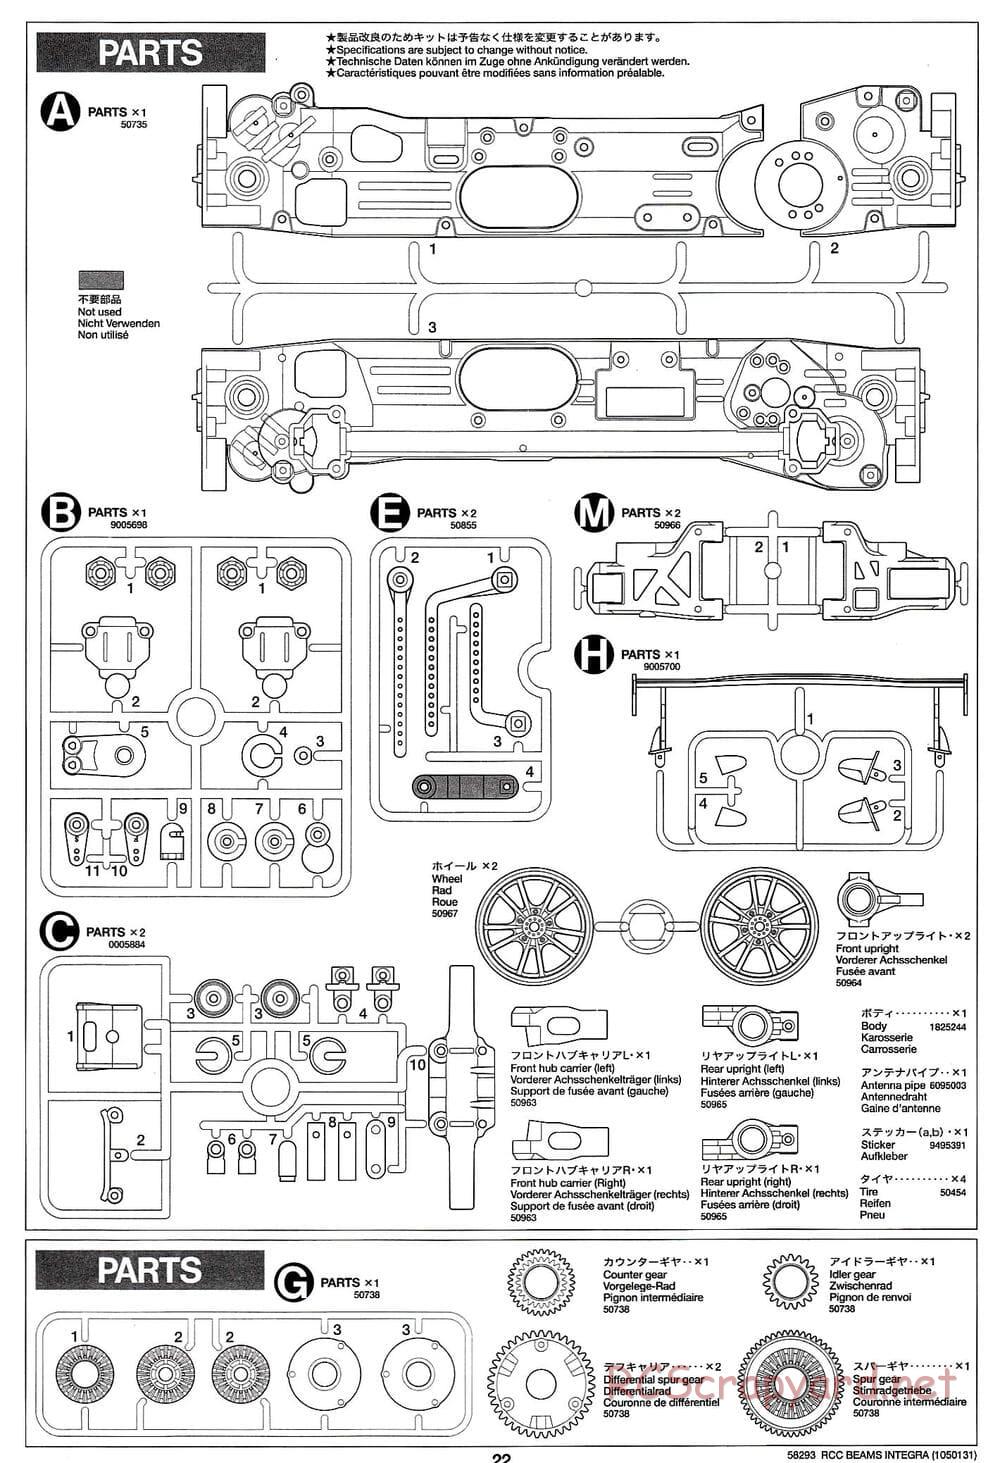 Tamiya - Beams Integra - TL-01 LA Chassis - Manual - Page 22